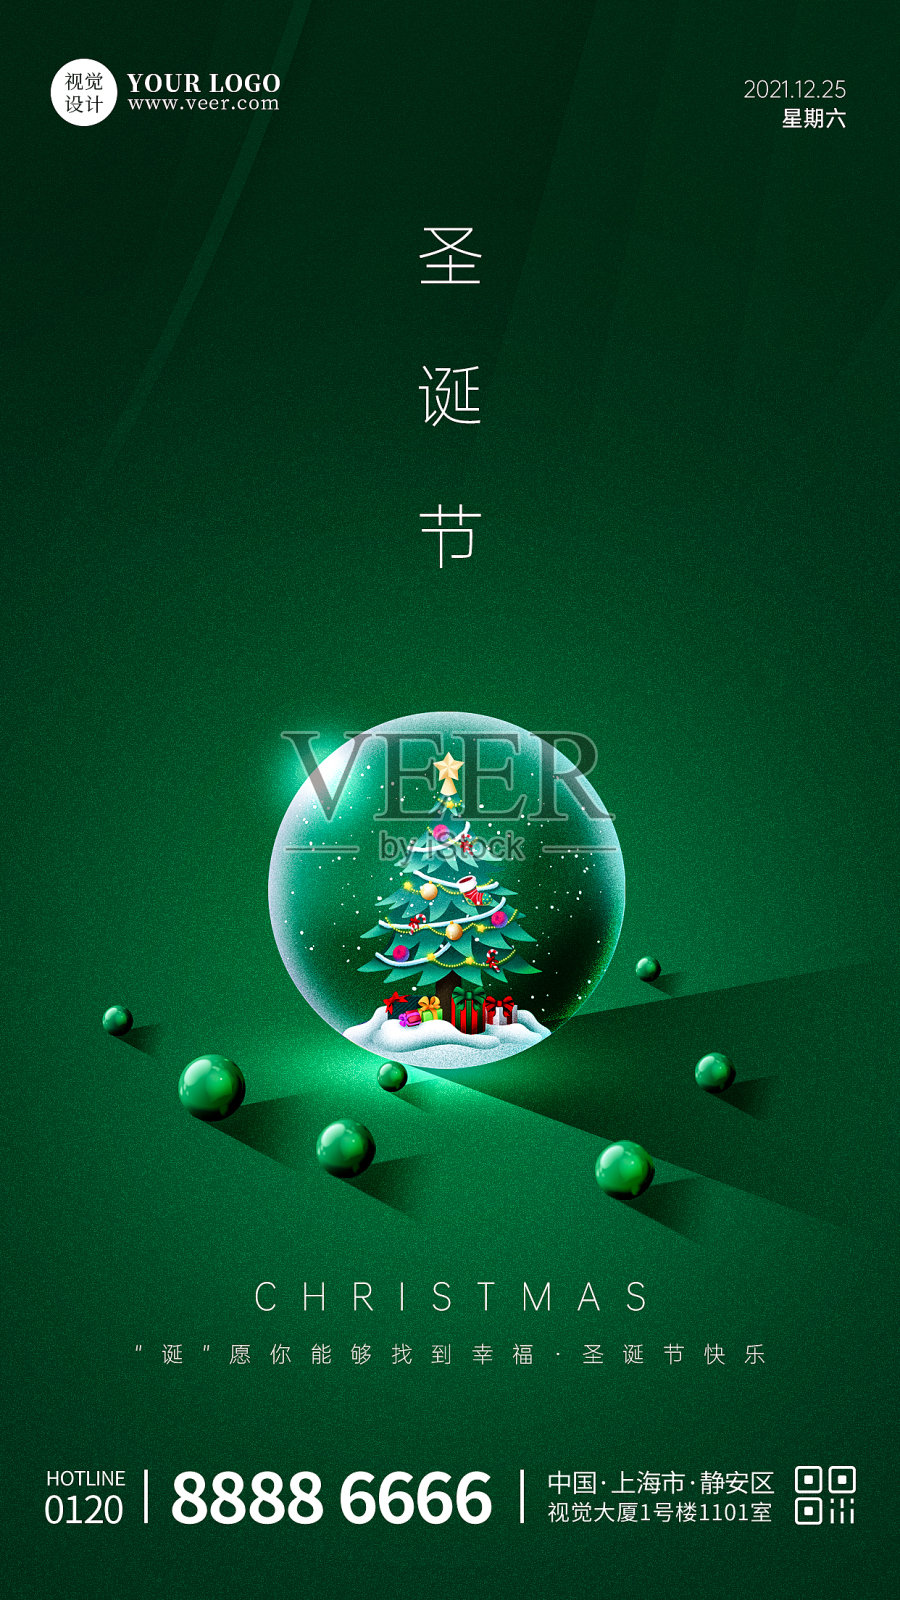 创意合成玻璃球圣诞节宣传手机海报设计模板素材